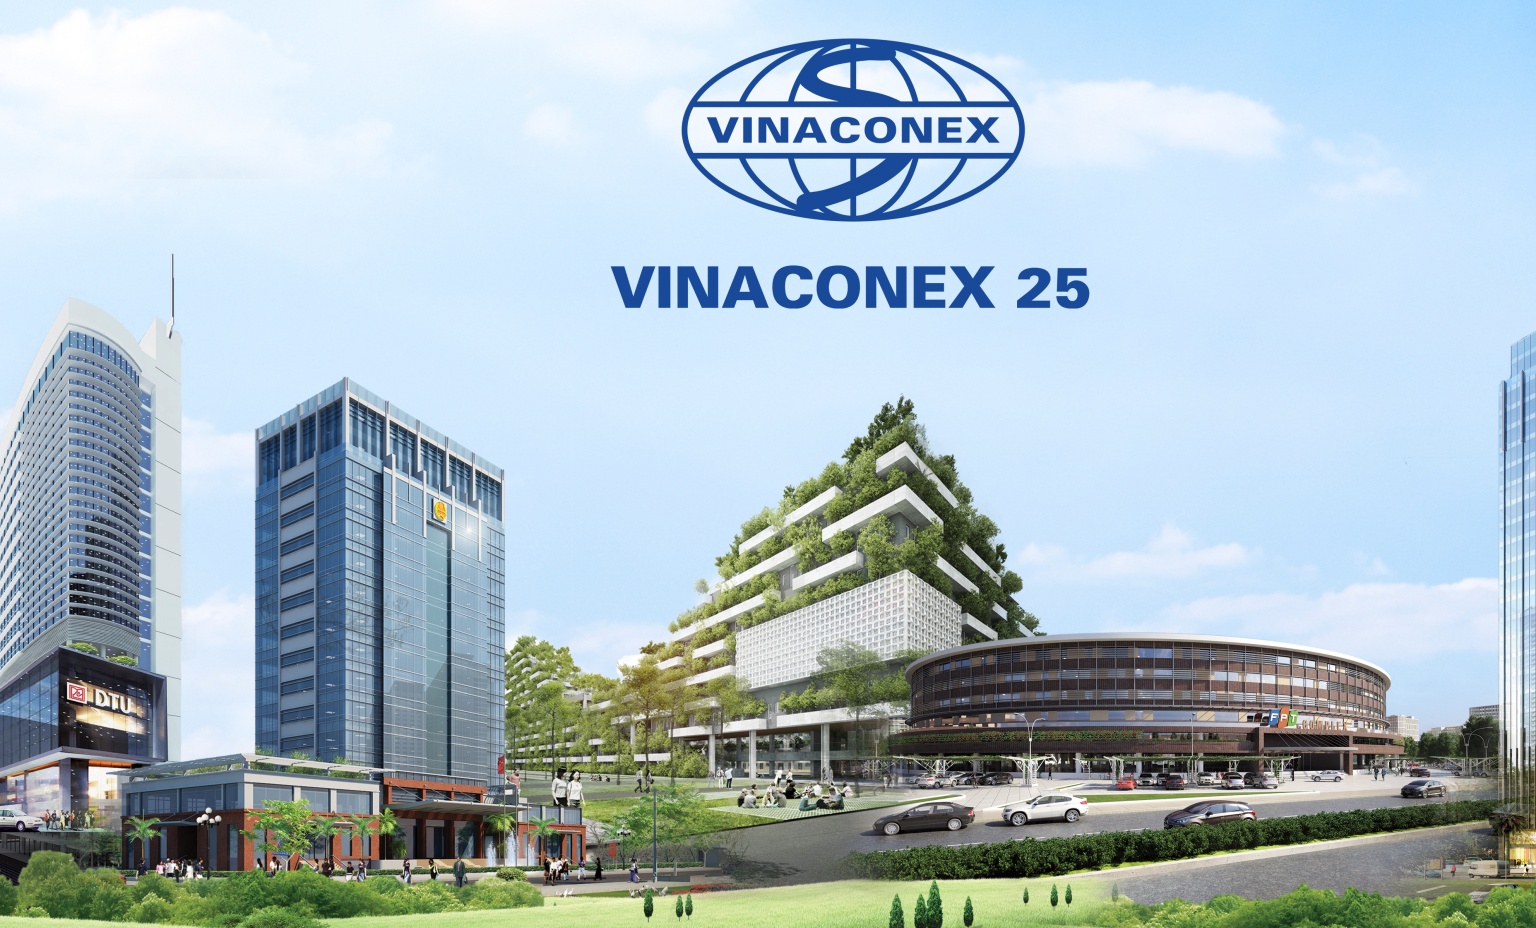 Nội soi khoản nợ hơn 1.000 tỷ đồng của Vinaconex 25 nằm ở những khoản nào?